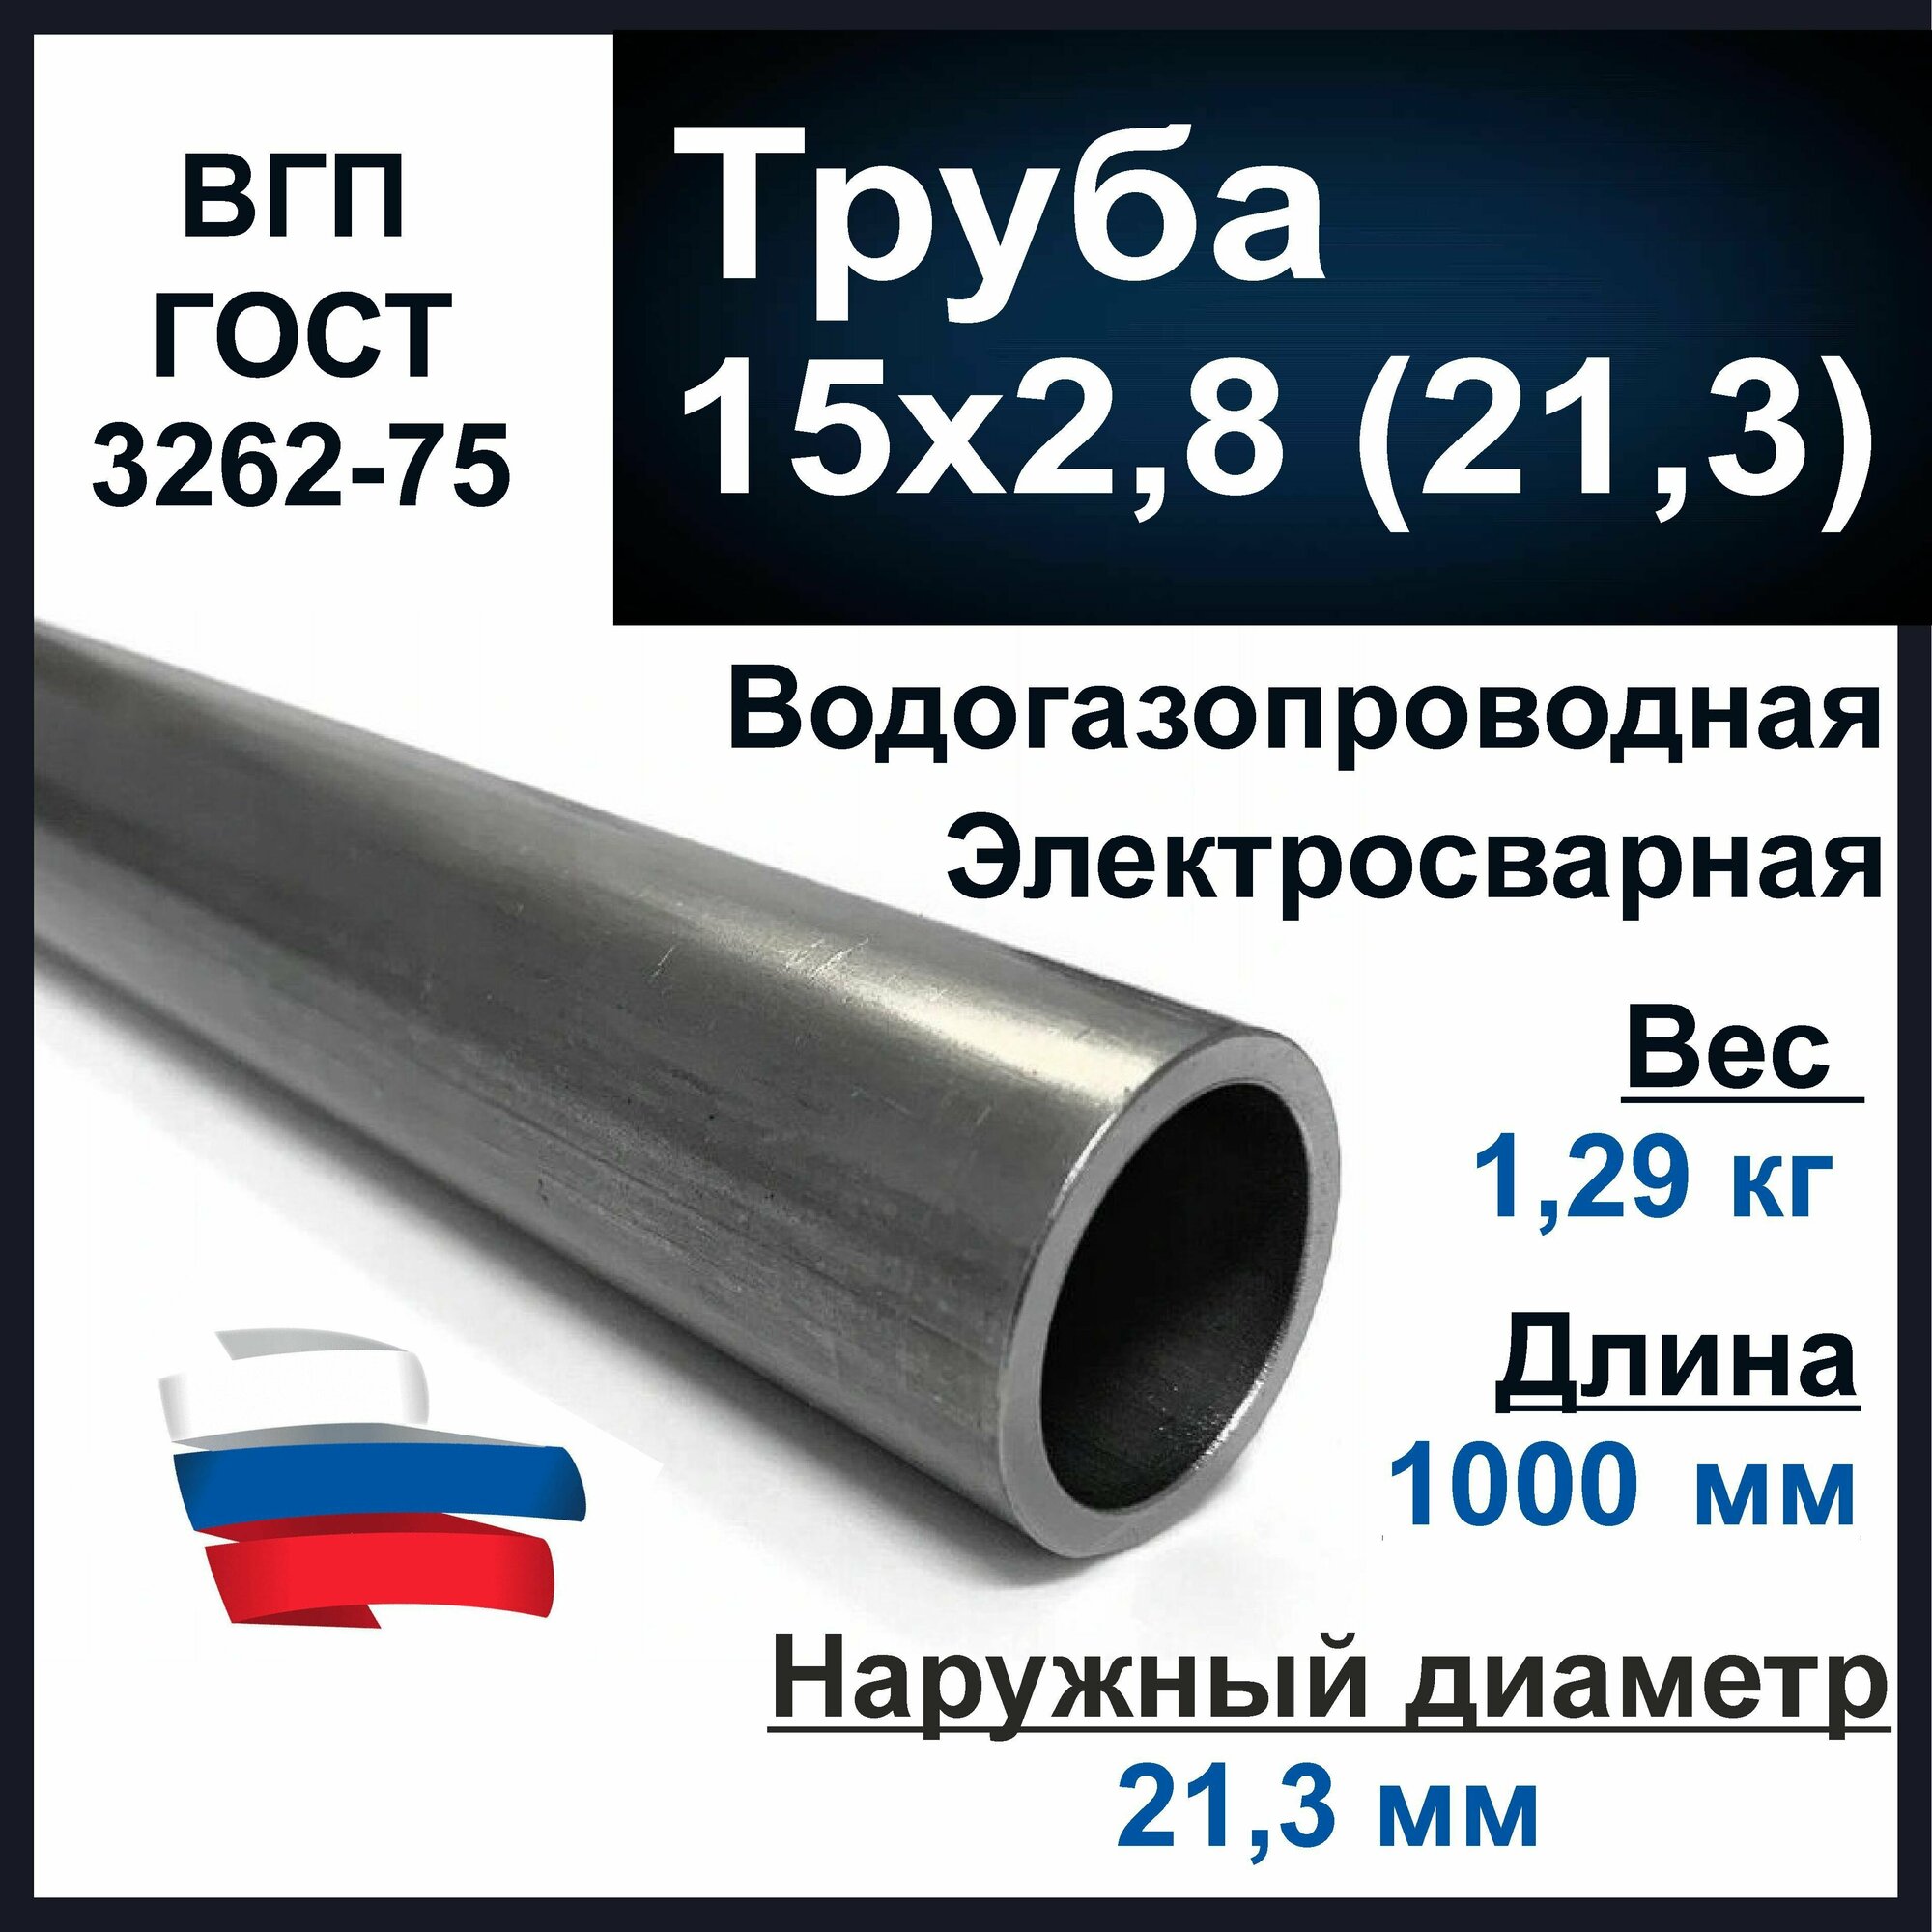 Труба 15х2,8 (21,3) стальная. Водогазопроводная (ВГП 15) ГОСТ 3262-75. Толщина стенки 2,8 мм. Длина 1000 мм.